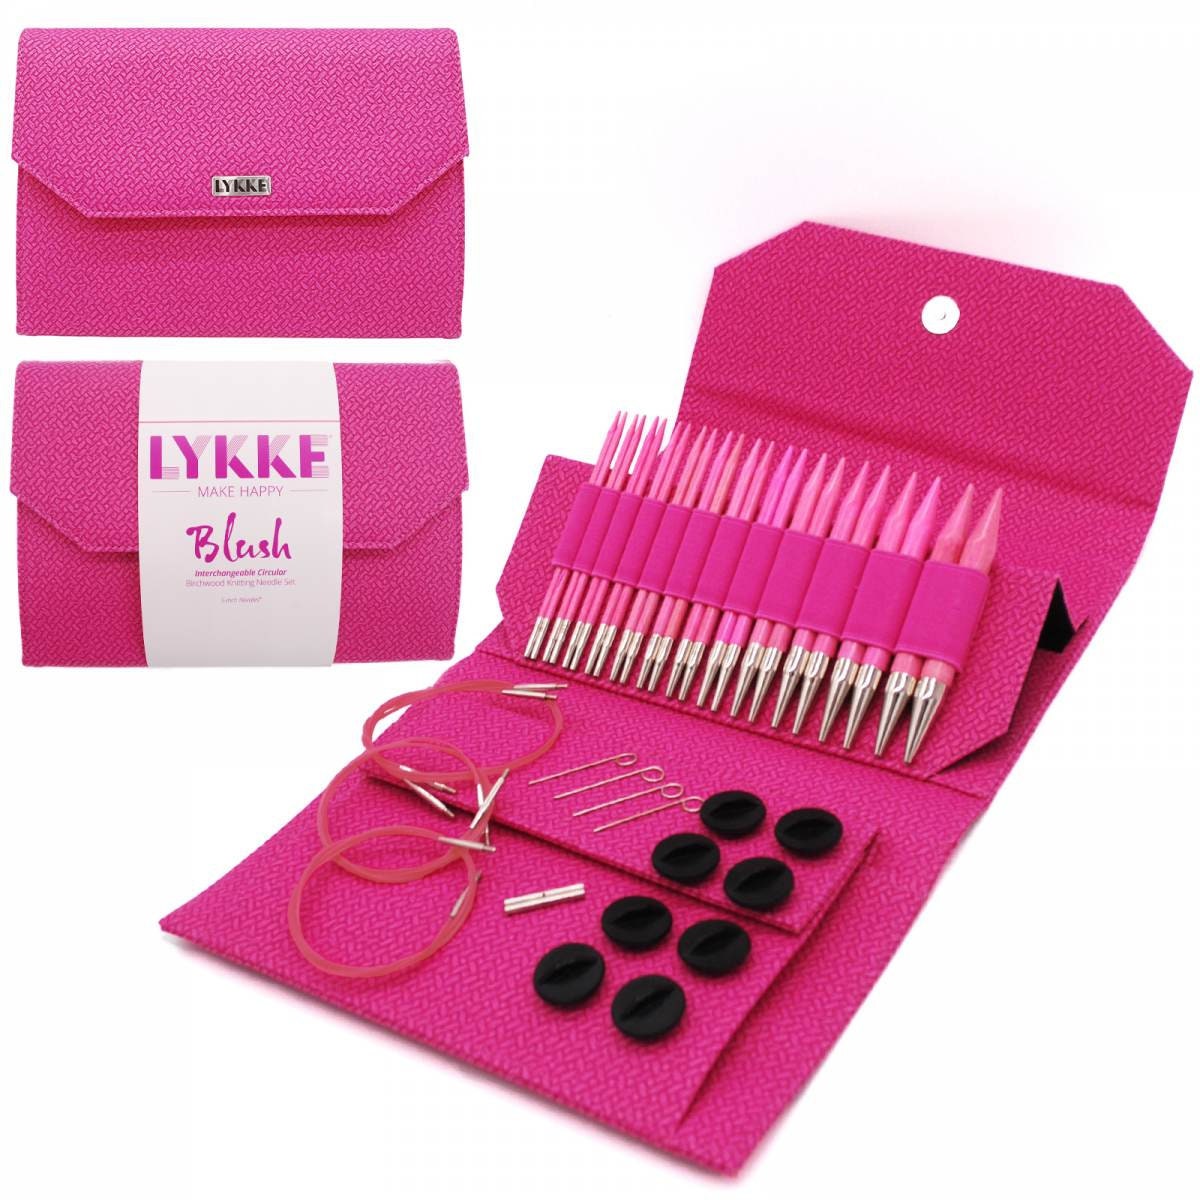 Lykke Knitting Needles - Blush 5" Interchangeable Circular Needle Set - Black Vegan Suede